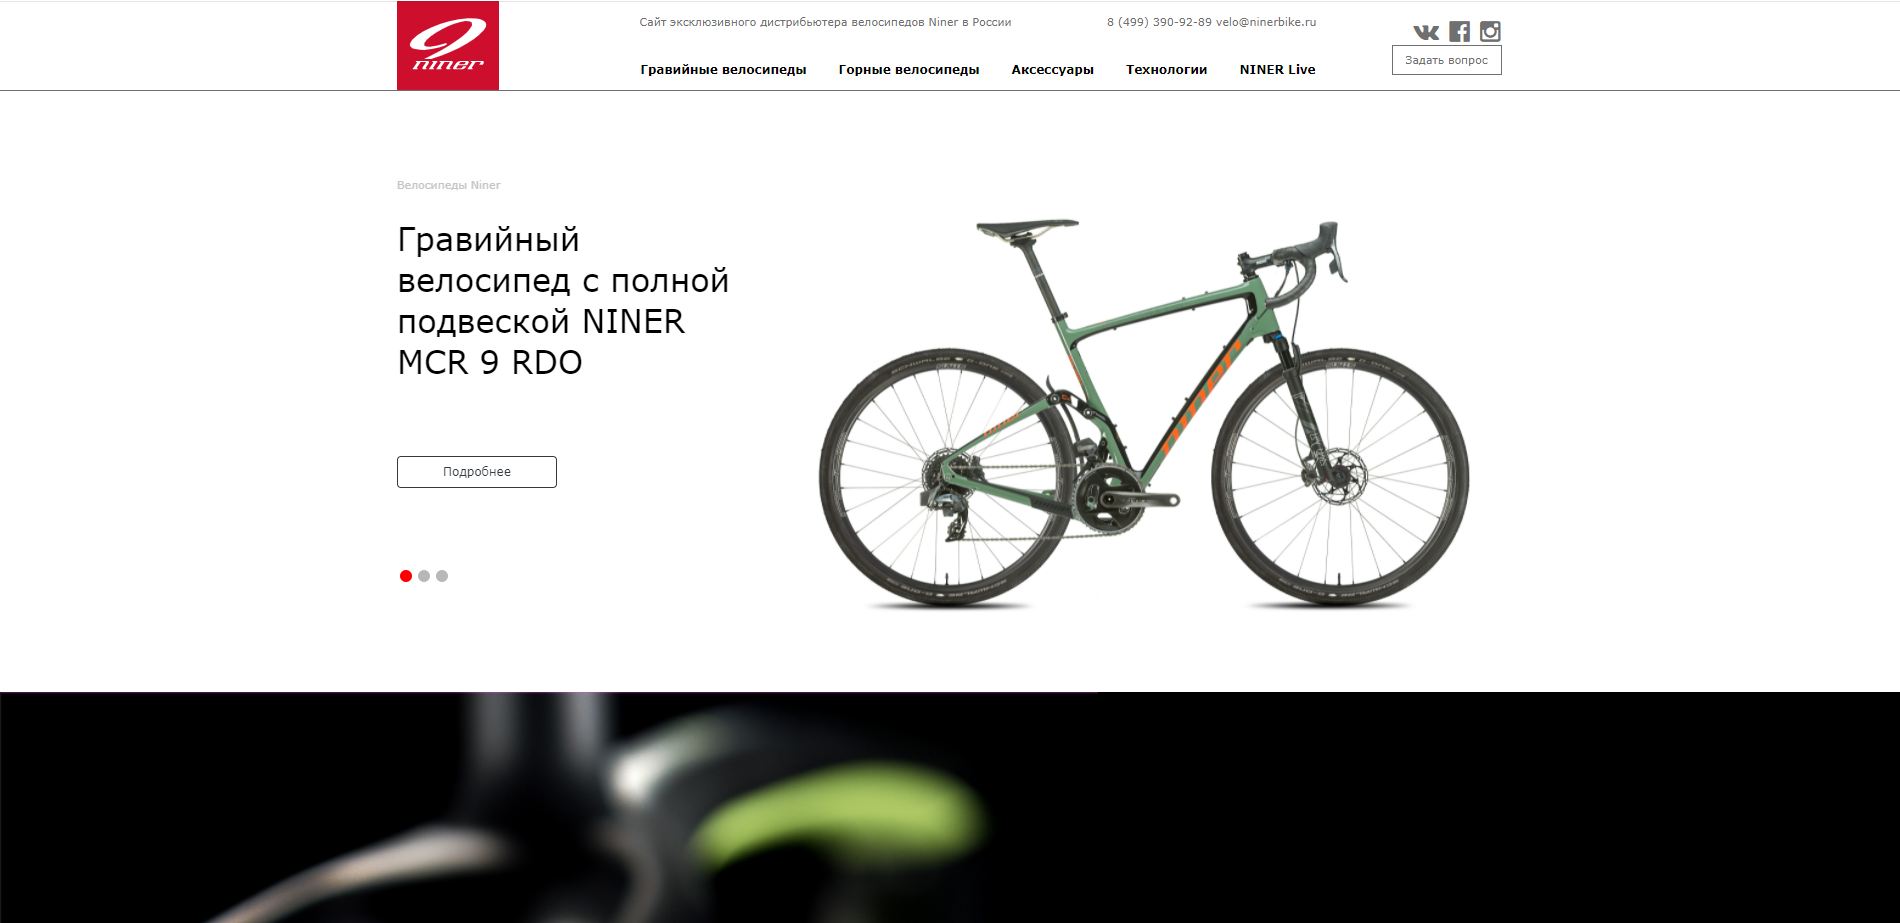 Сайт эксклюзивного дистрибьютера велосипедов Niner в России - реализация проекта